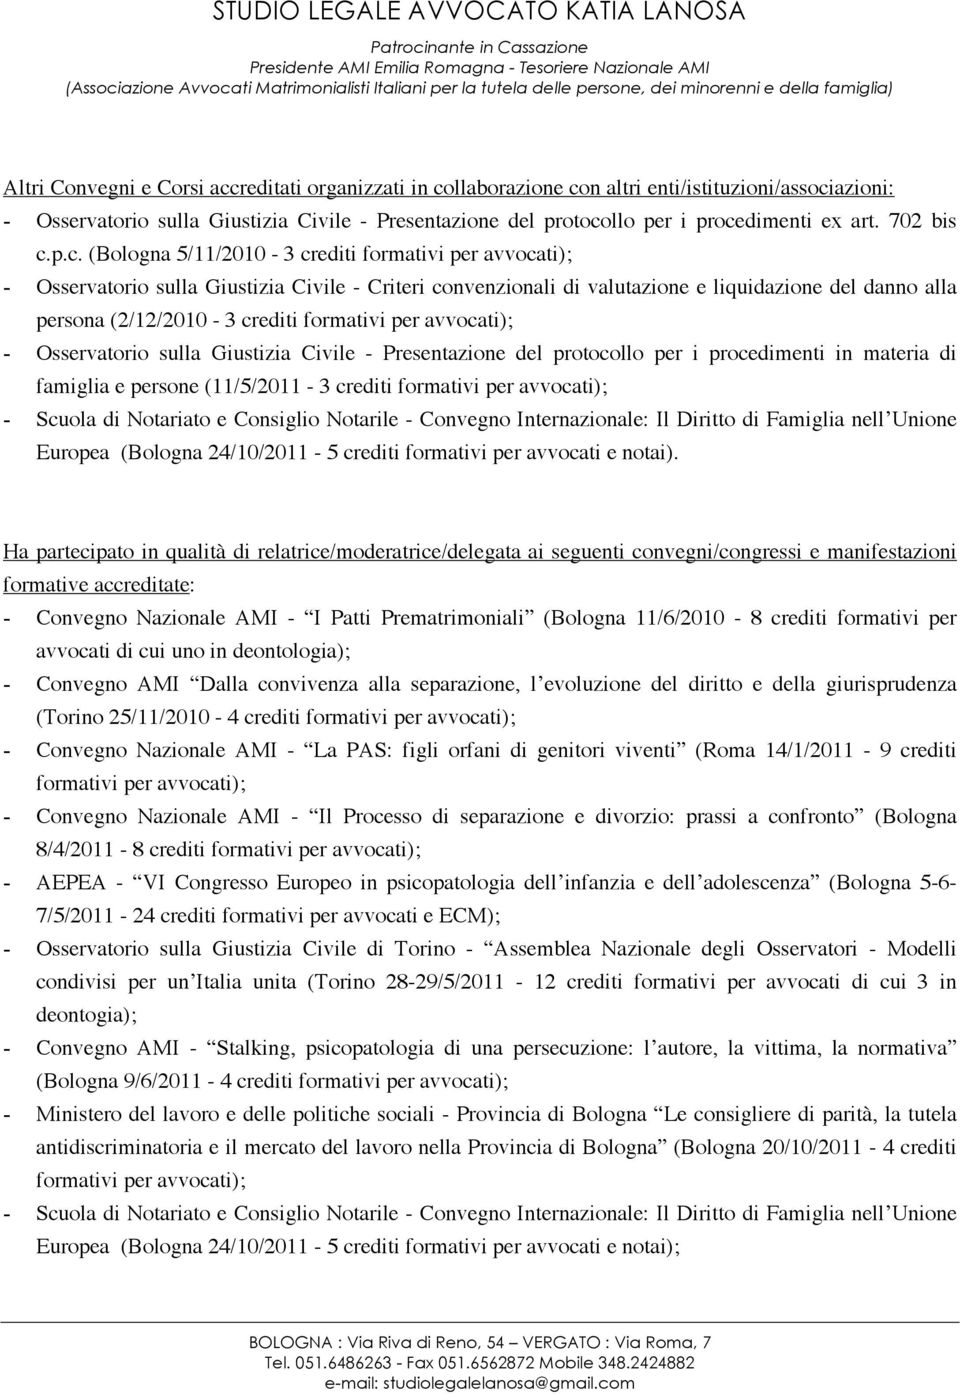 p.c. (Bologna 5/11/2010-3 crediti formativi per avvocati); - Osservatorio sulla Giustizia Civile - Criteri convenzionali di valutazione e liquidazione del danno alla persona (2/12/2010-3 crediti